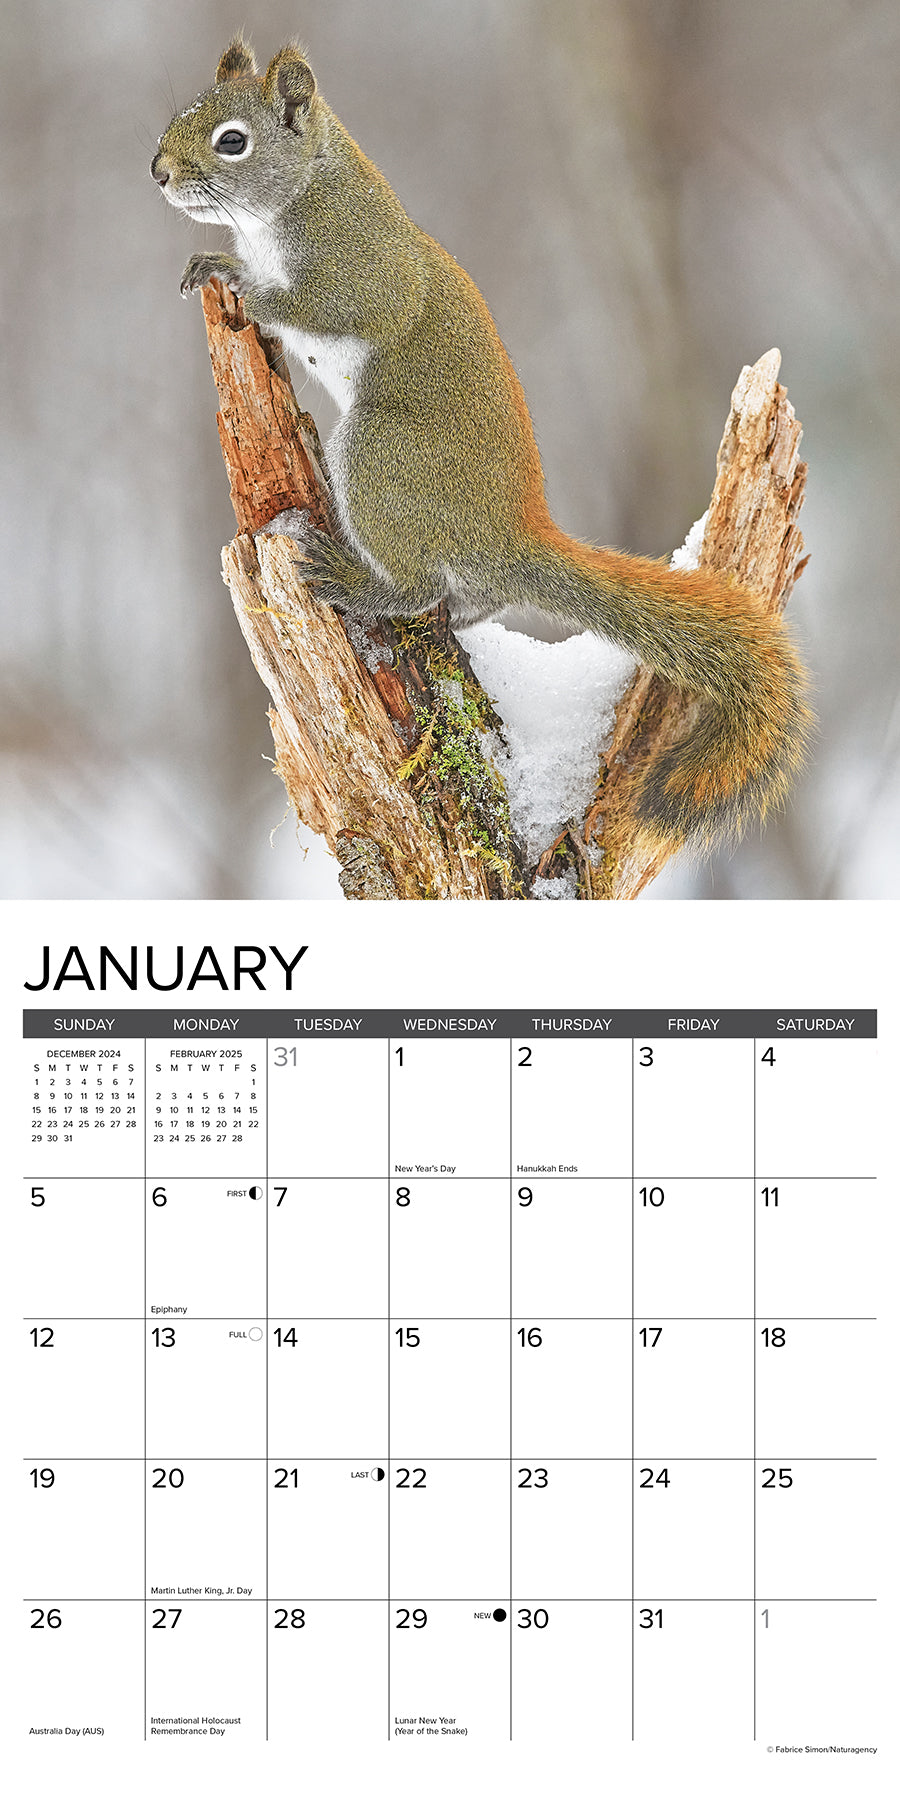 2025 Squirrels - Square Wall Calendar